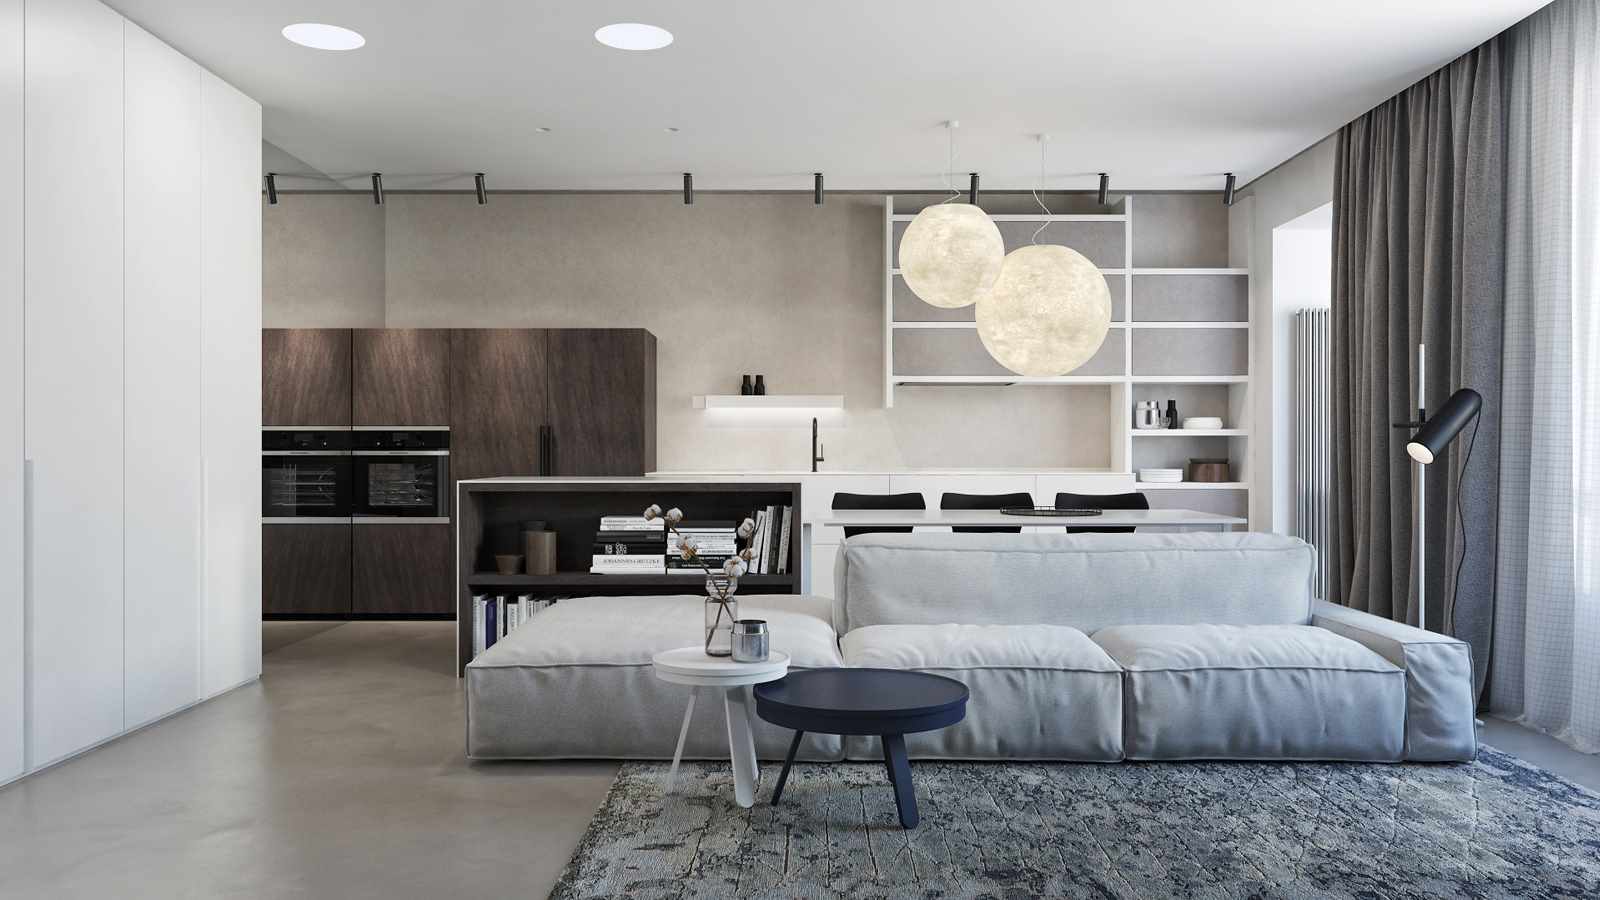 exemplo do uso de decoração luminosa de uma sala de estar no estilo do minimalismo